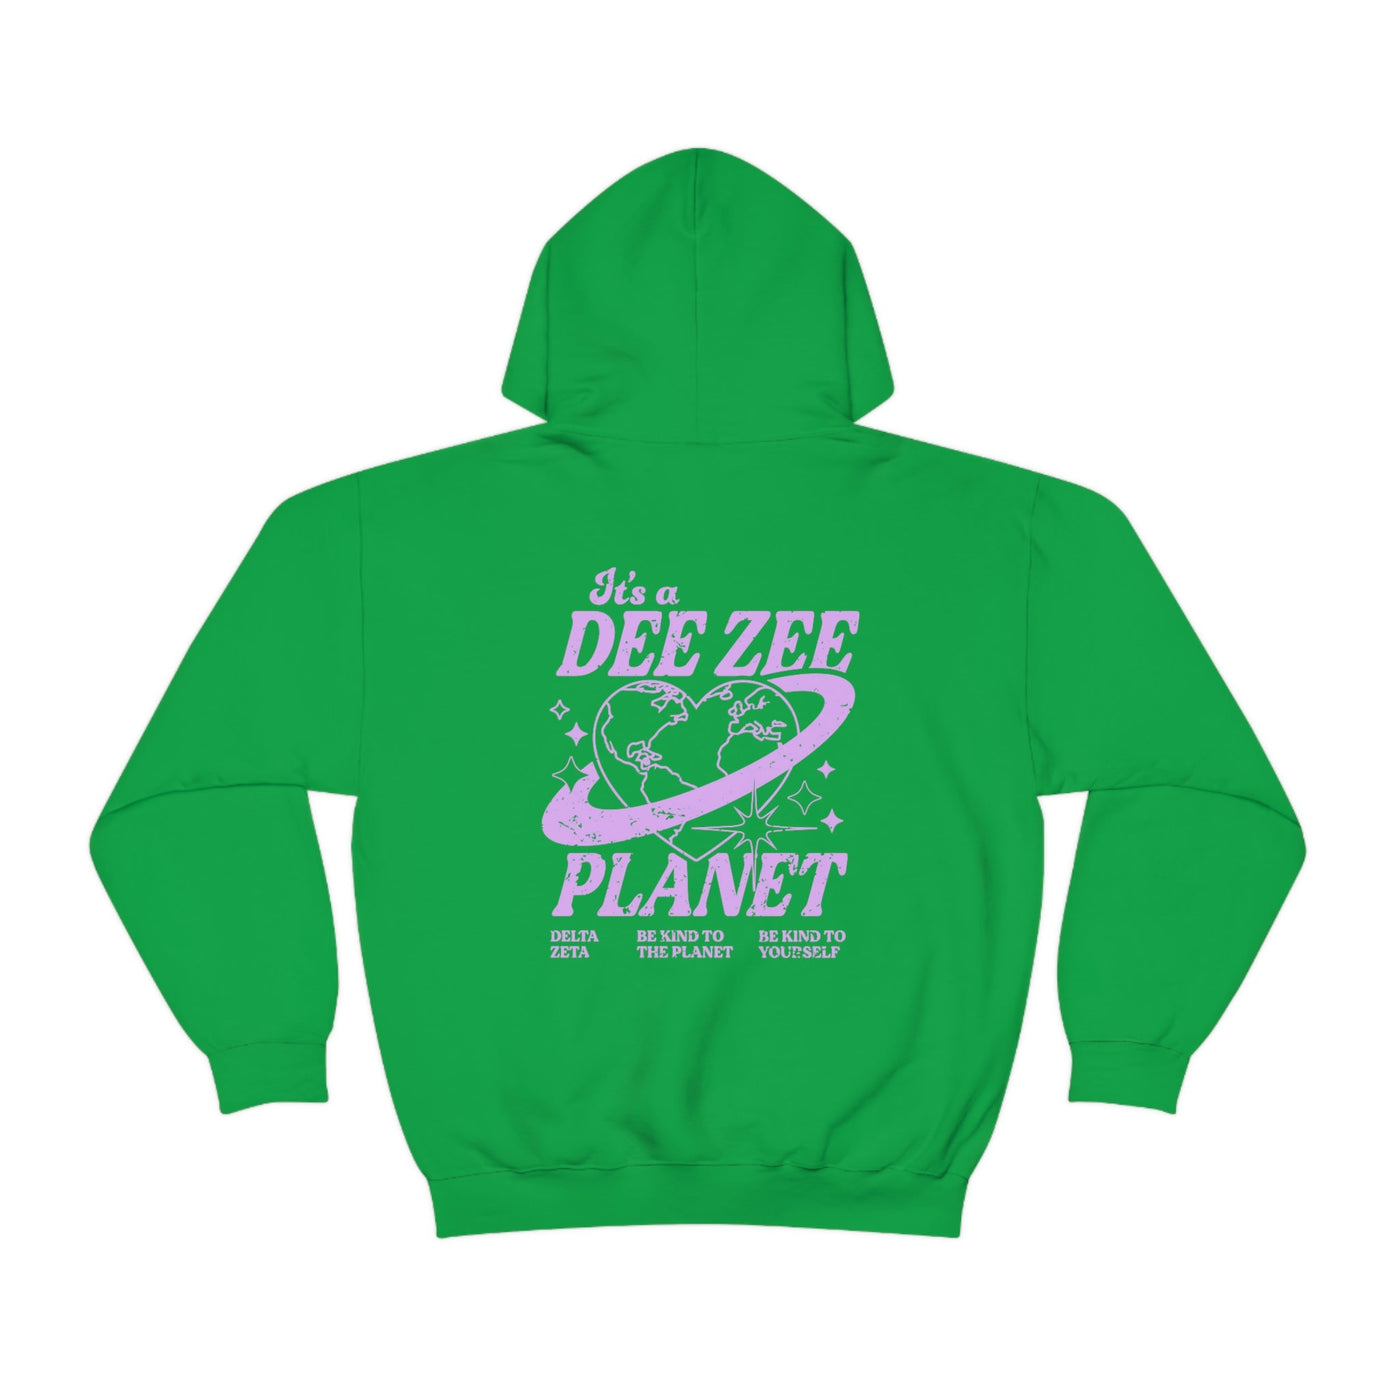 Delta Zeta Planet Hoodie | Be Kind to the Planet Trendy Sorority Hoodie